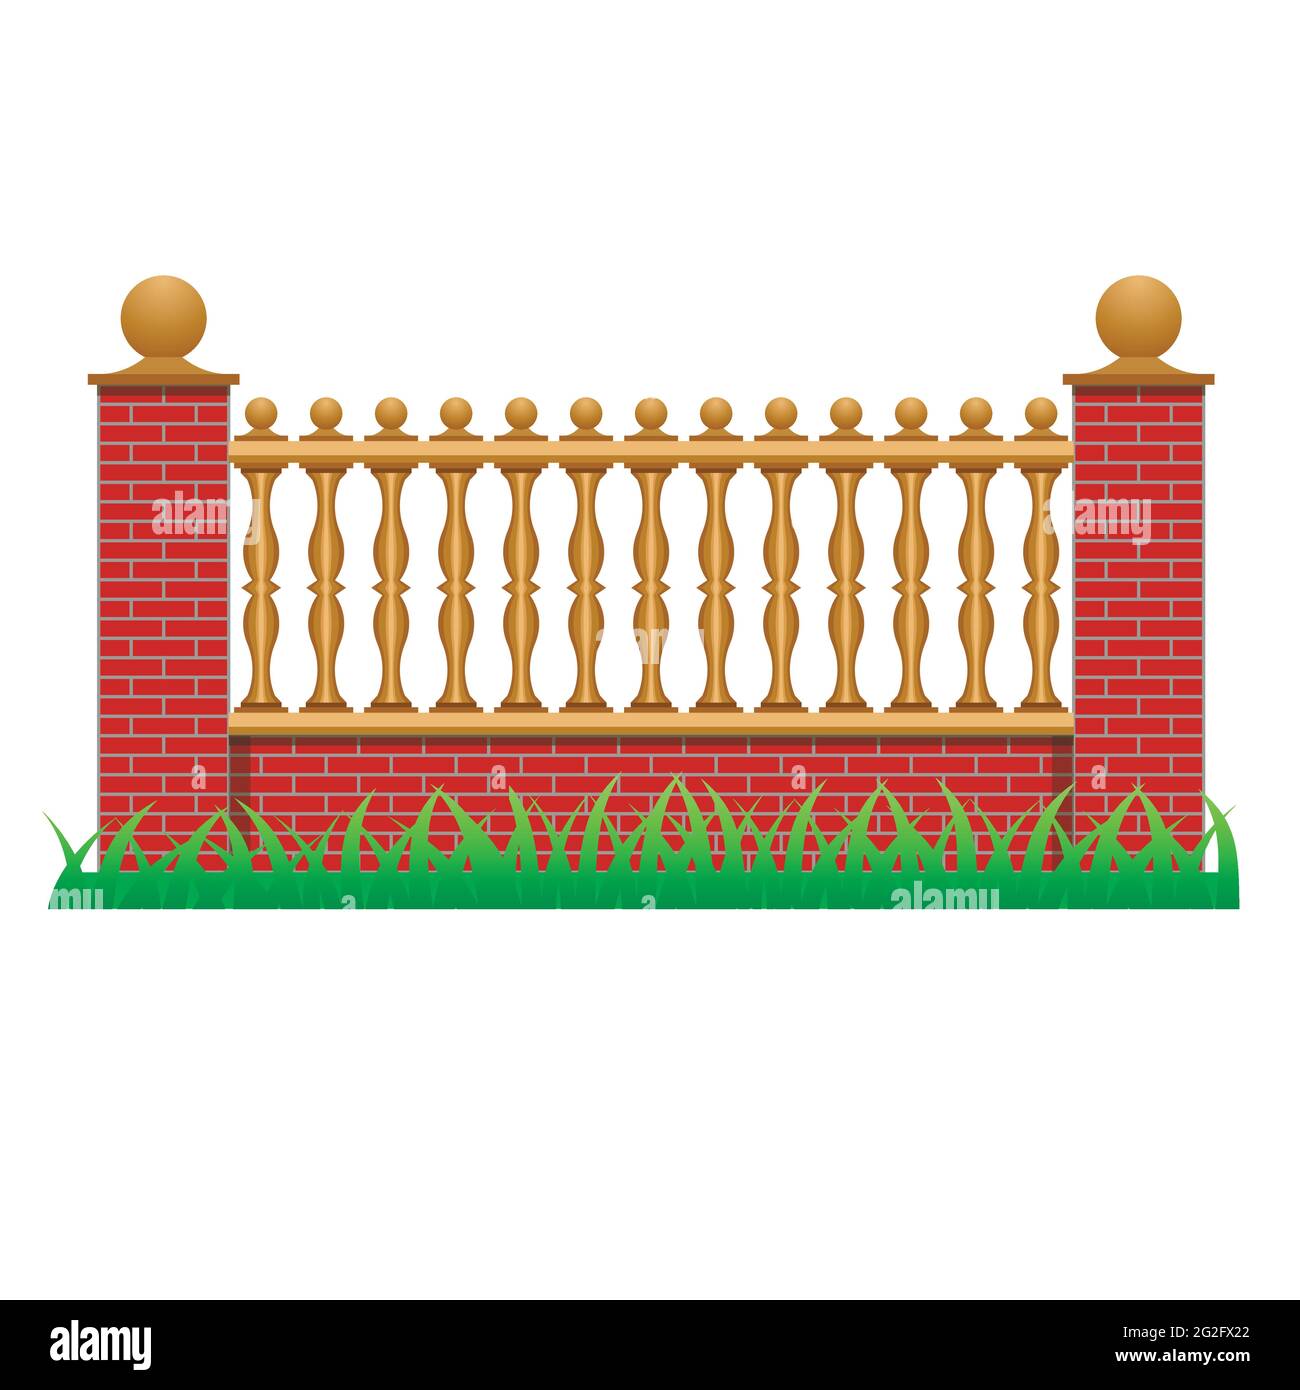 Ziegelzaun mit Balustern dekoriert. Element zur Verwendung in Herrenhaus, Haus oder Garten Zaun. Isoliertes Objekt auf weißem Hintergrund. Vektorgrafik Stock Vektor